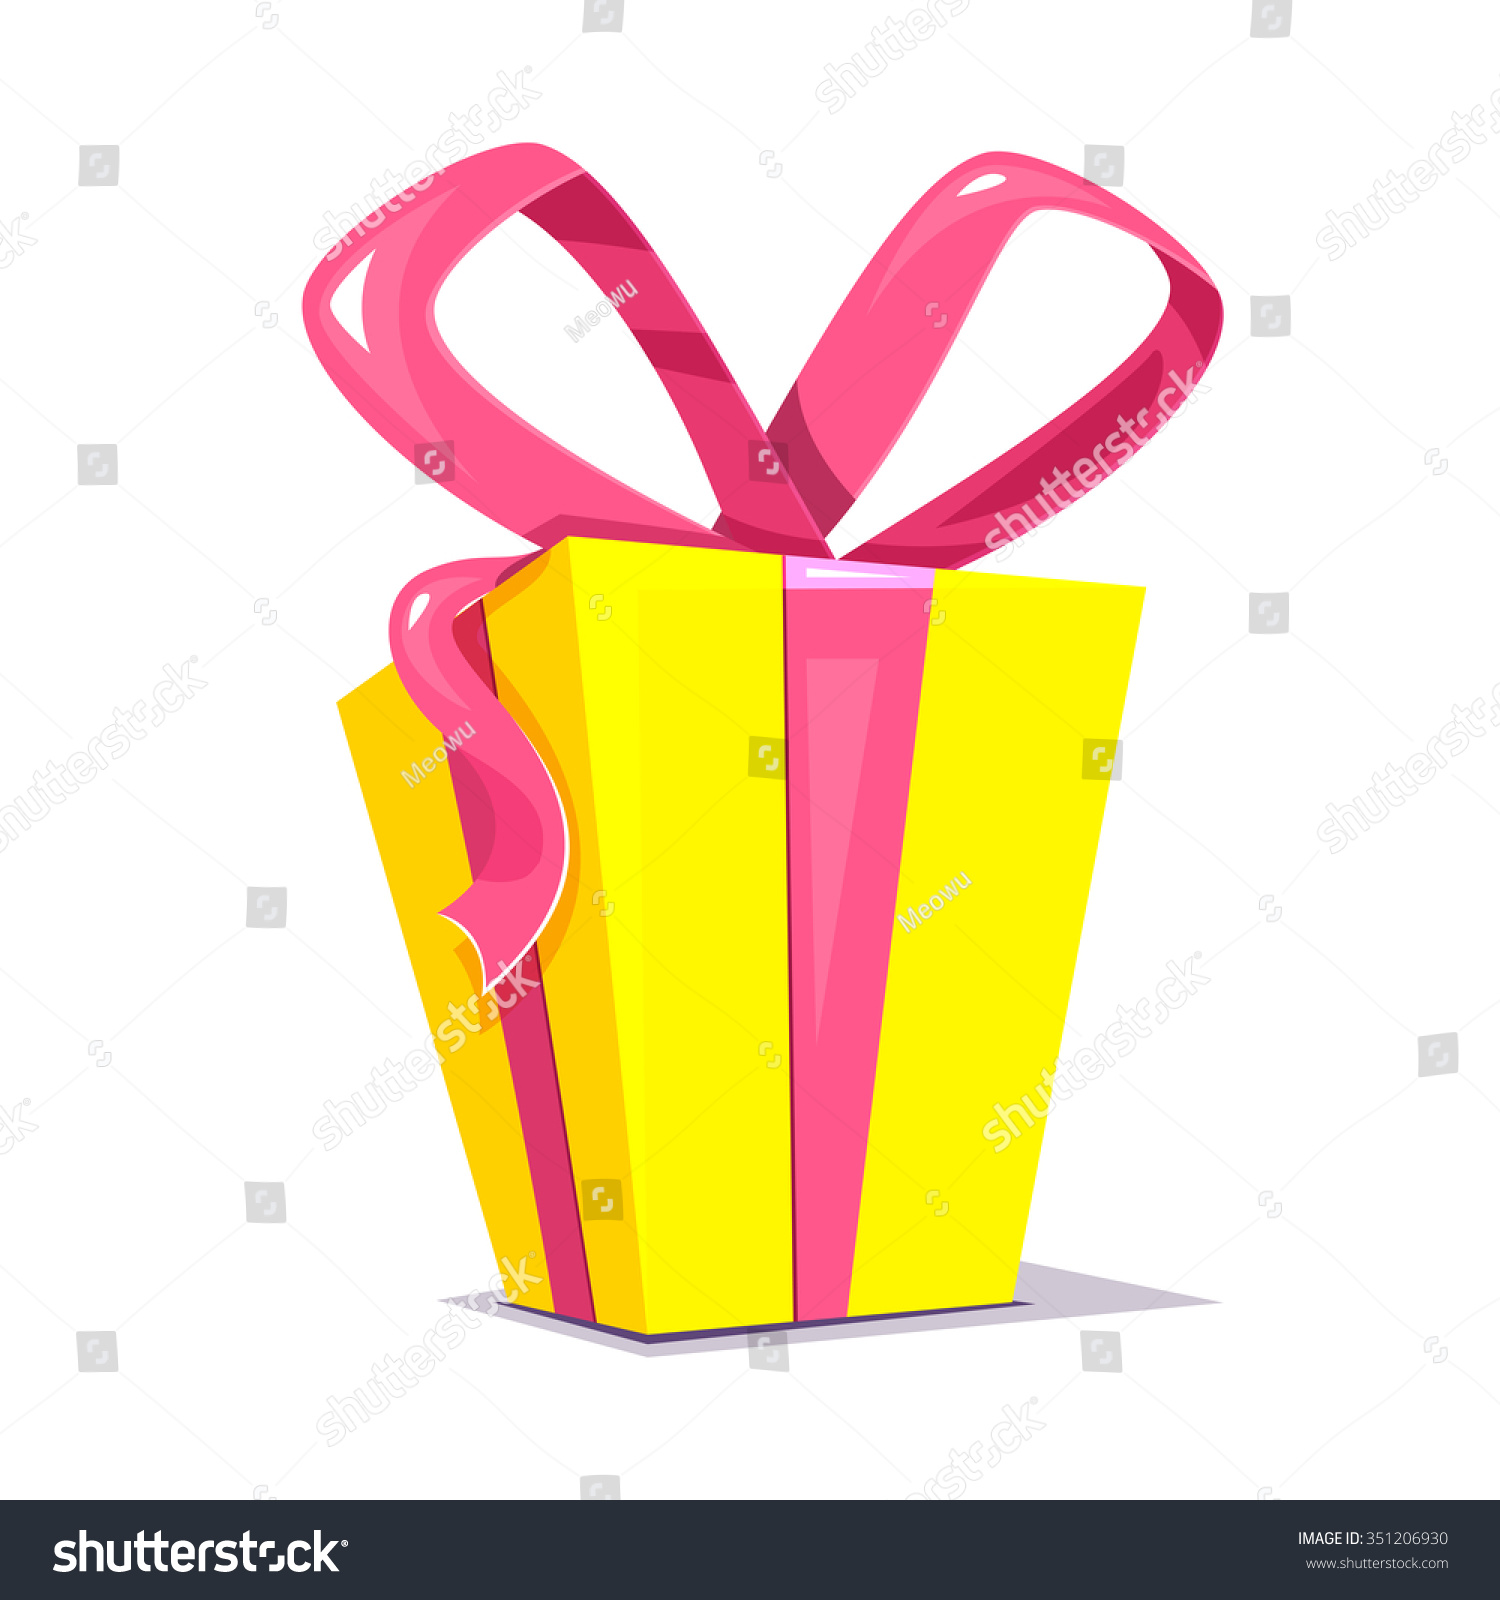 Download Big Yellow Gift Box Bright Pink Stock Vector Royalty Free 351206930 PSD Mockup Templates